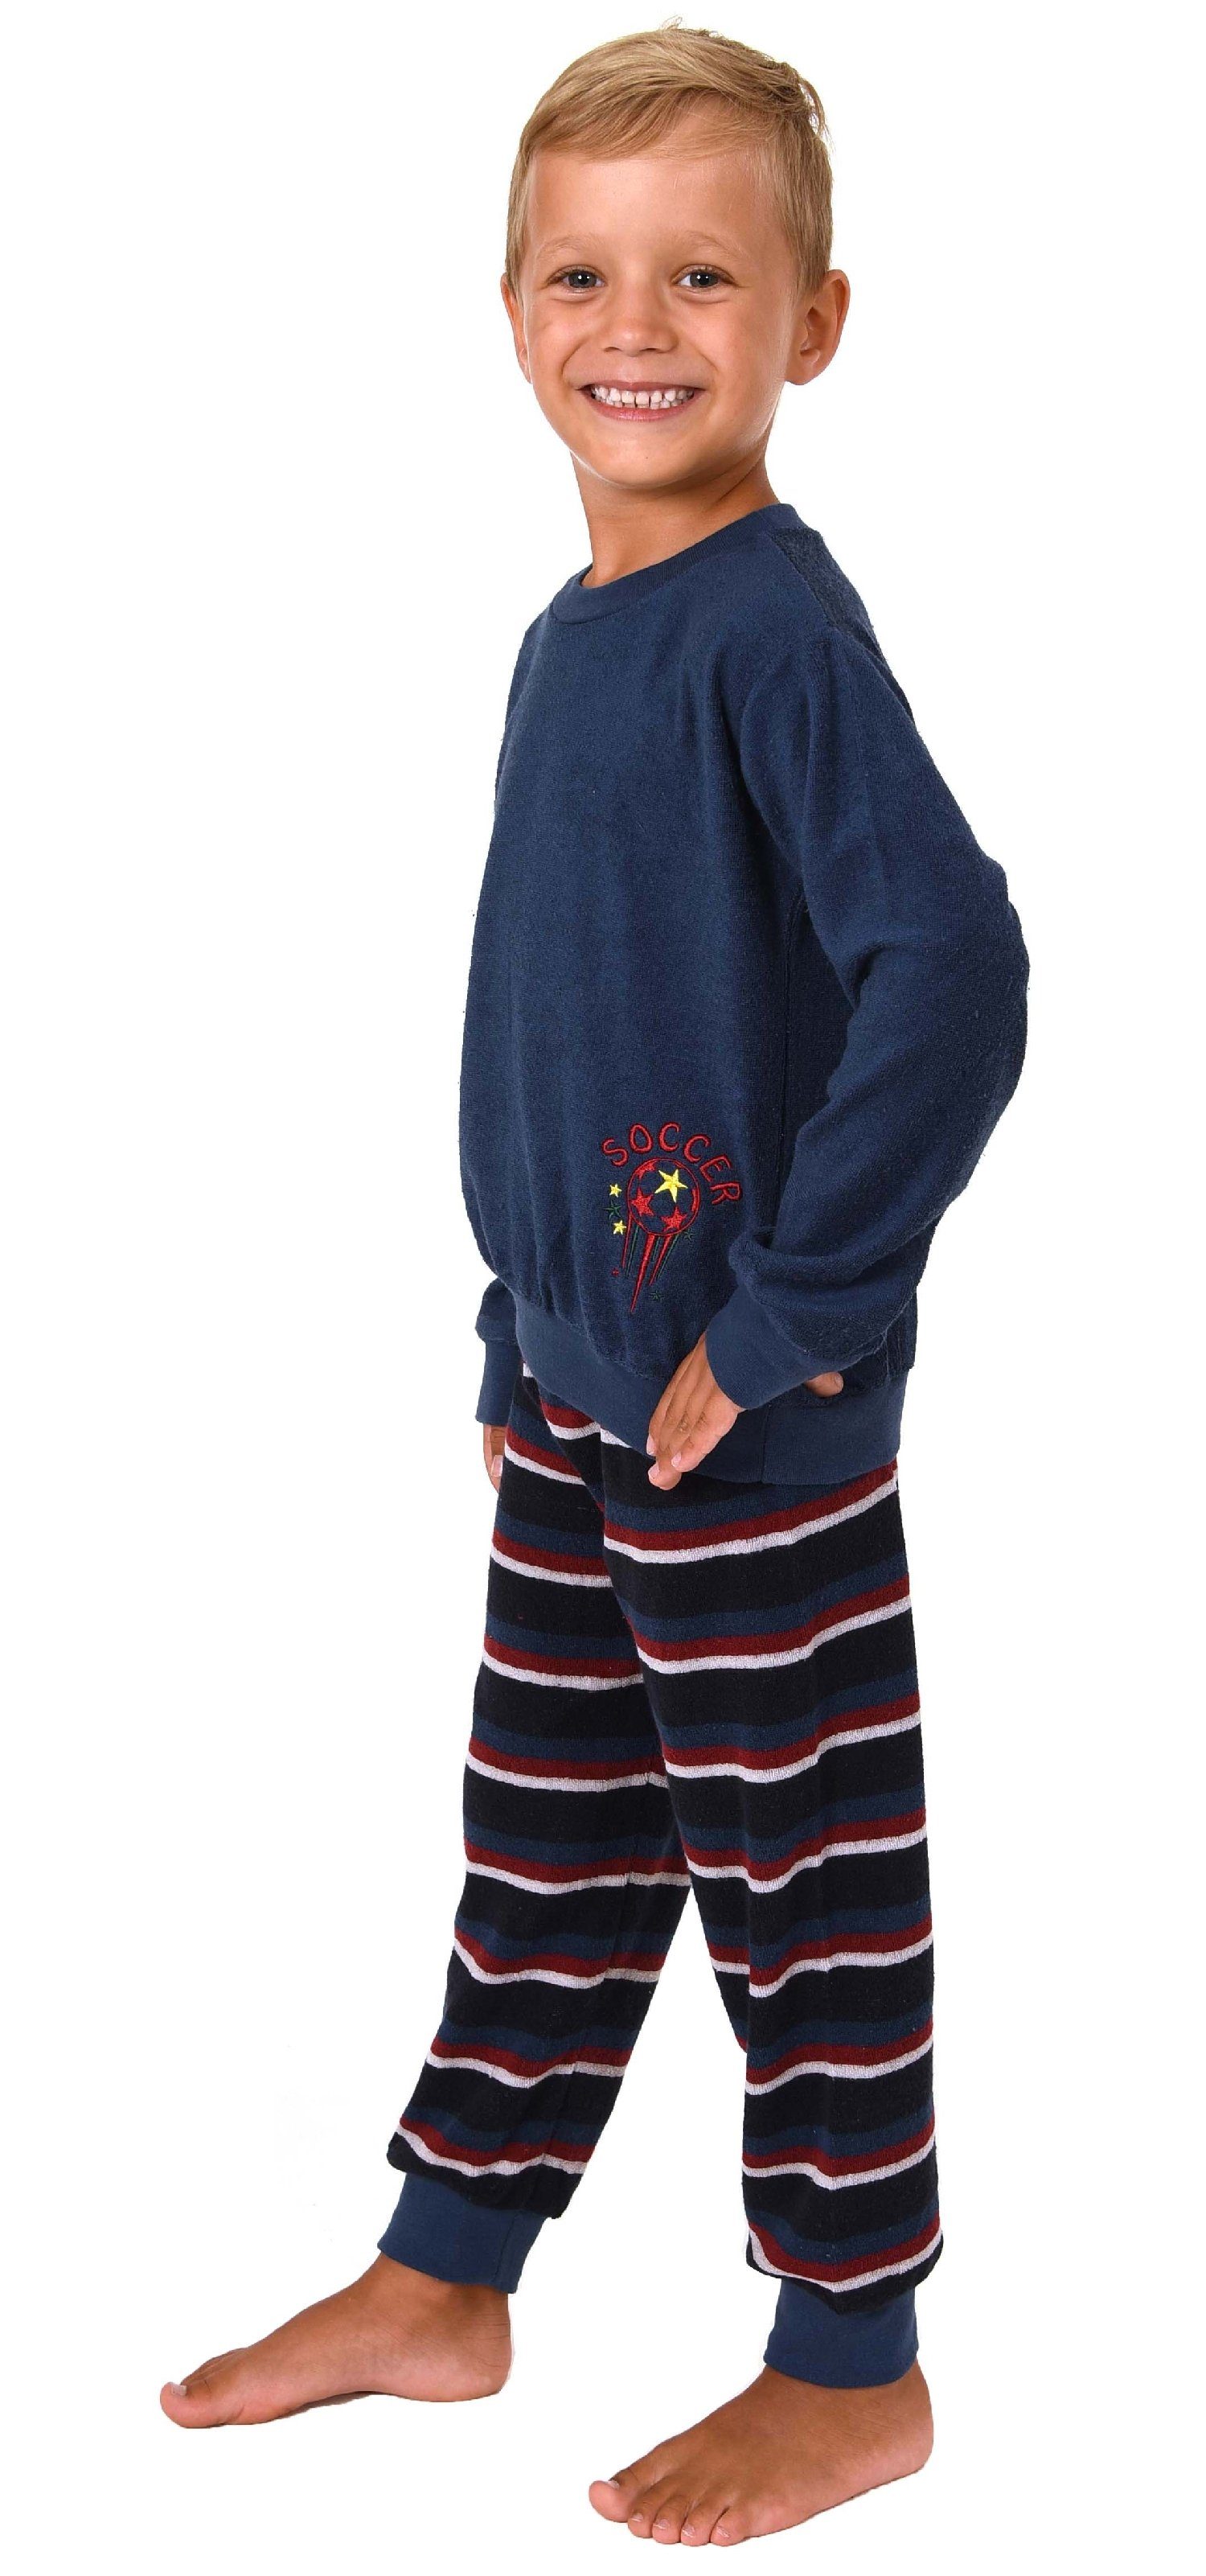 Kinder Kinderunterwäsche Normann Pyjama Jungen Frottee Pyjama Kleinkinder Schlafanzug mit Bündchen und Soccer - Fussball Motiv